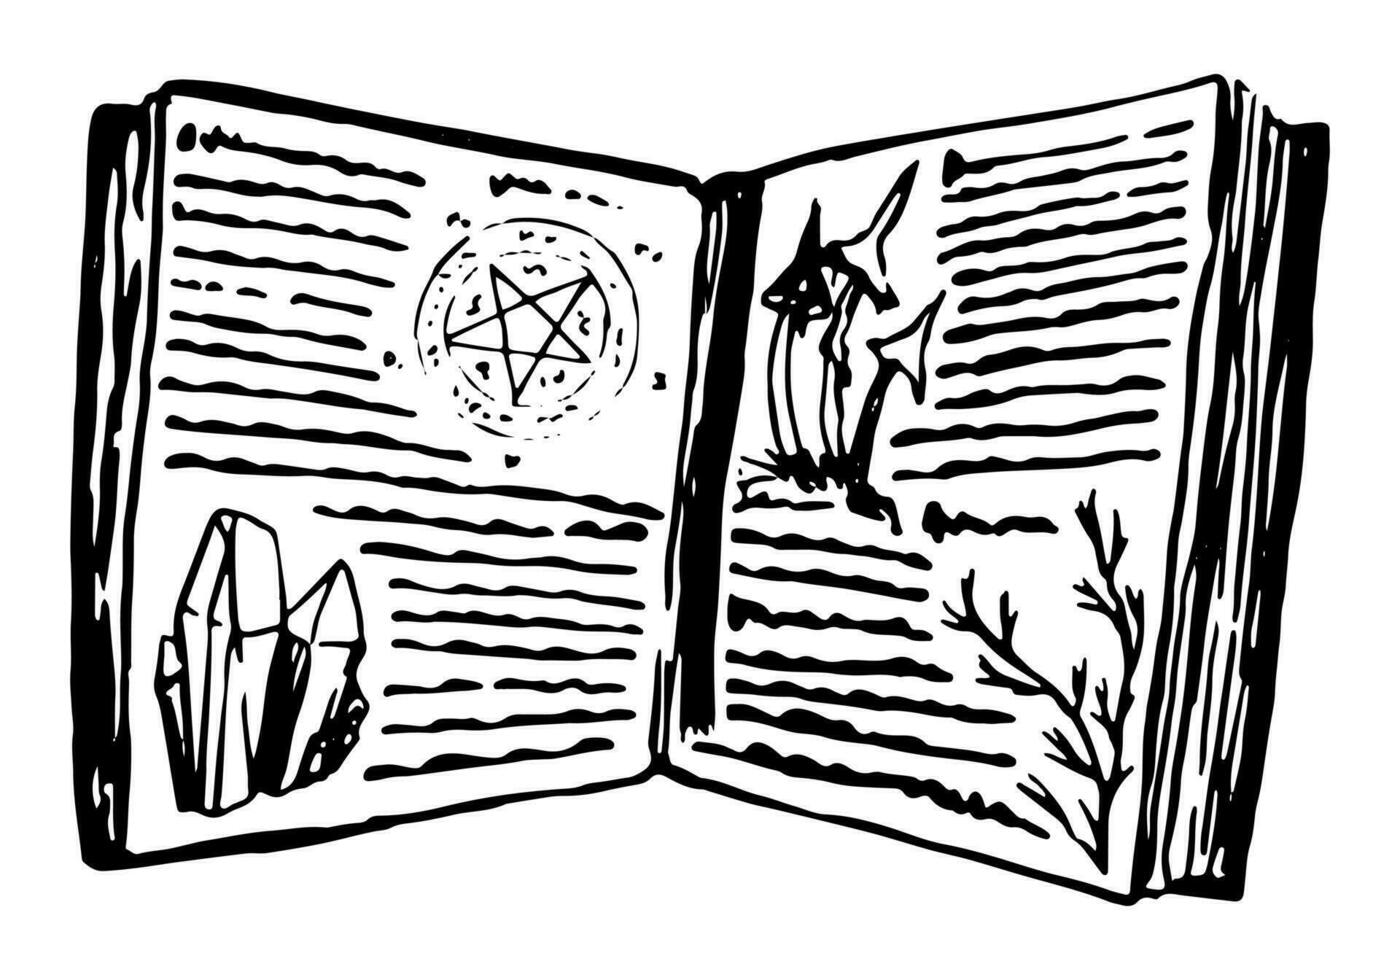 magi bok, bok av stavar och trolldom. ockult häxa Artikel bläck skiss isolerat på vit. halloween hand dragen vektor illustration i retro stil.